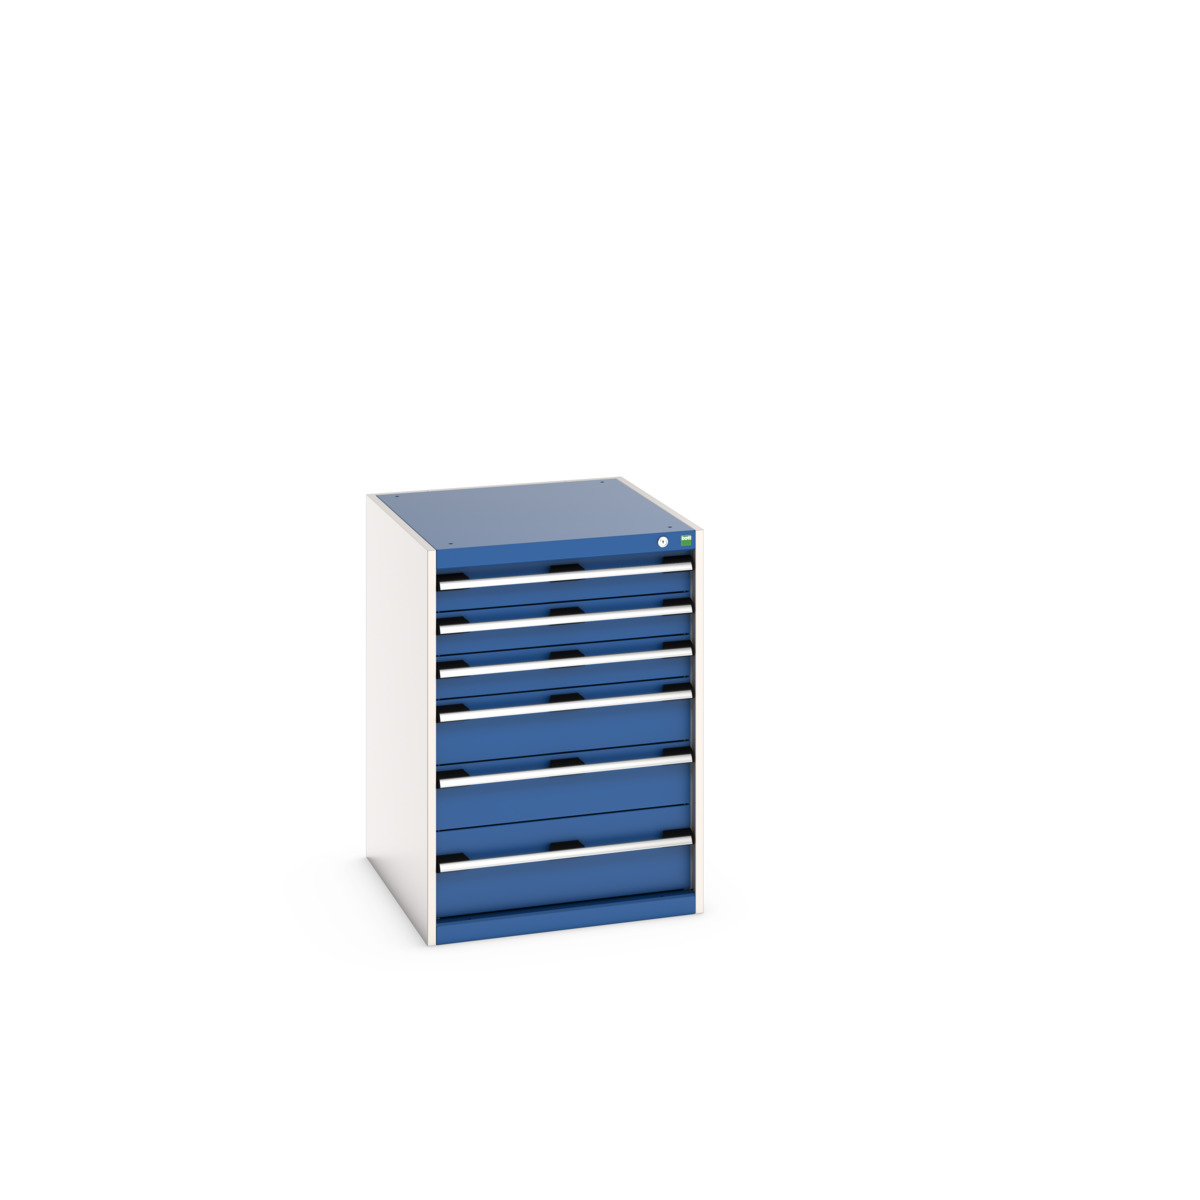 40027088.11V - cubio drawer cabinet